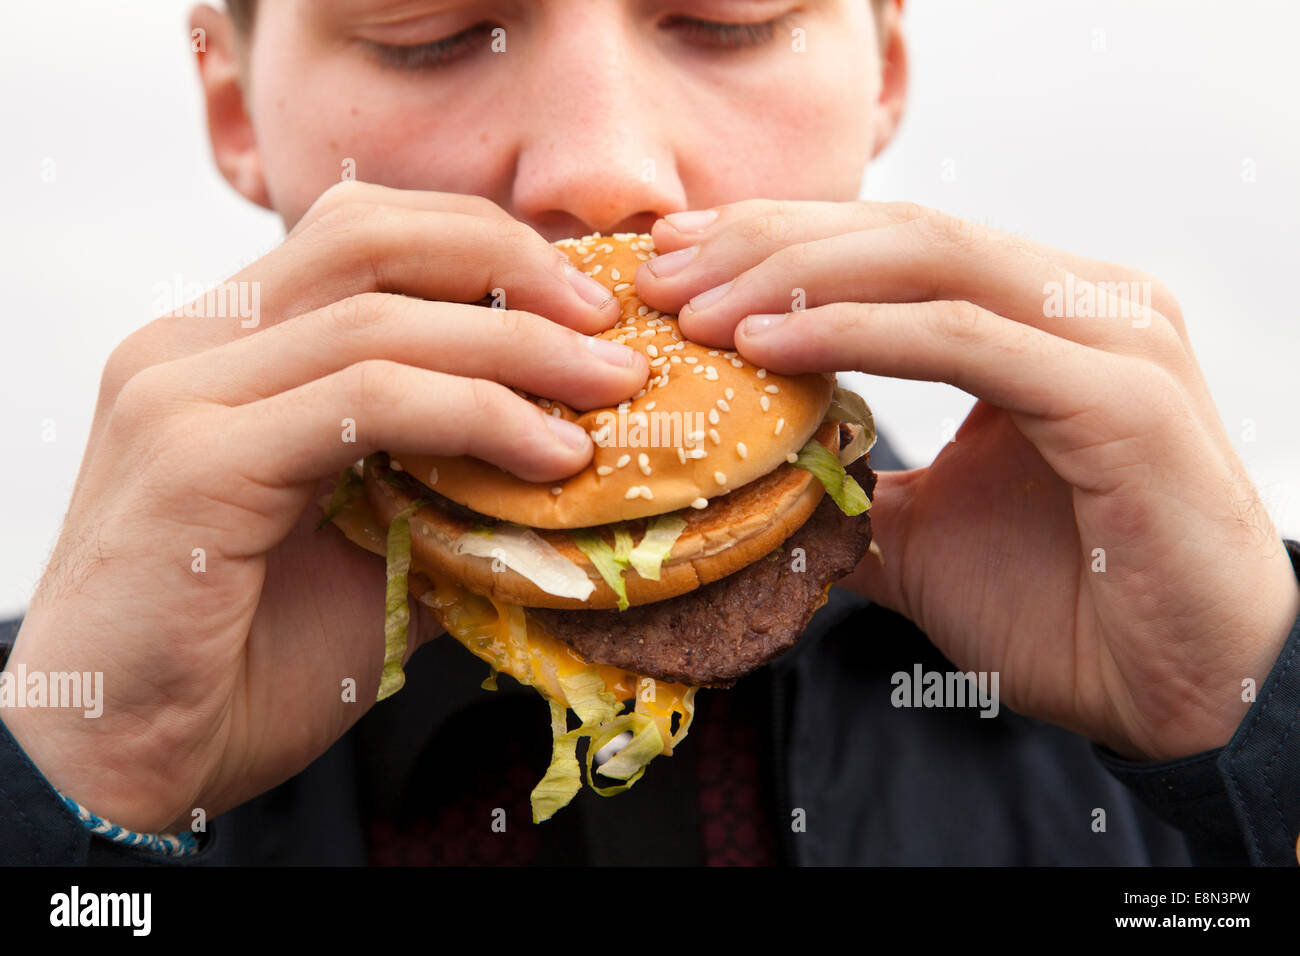 Un adolescent de manger un hamburger Big Mac de McDonald's. Banque D'Images